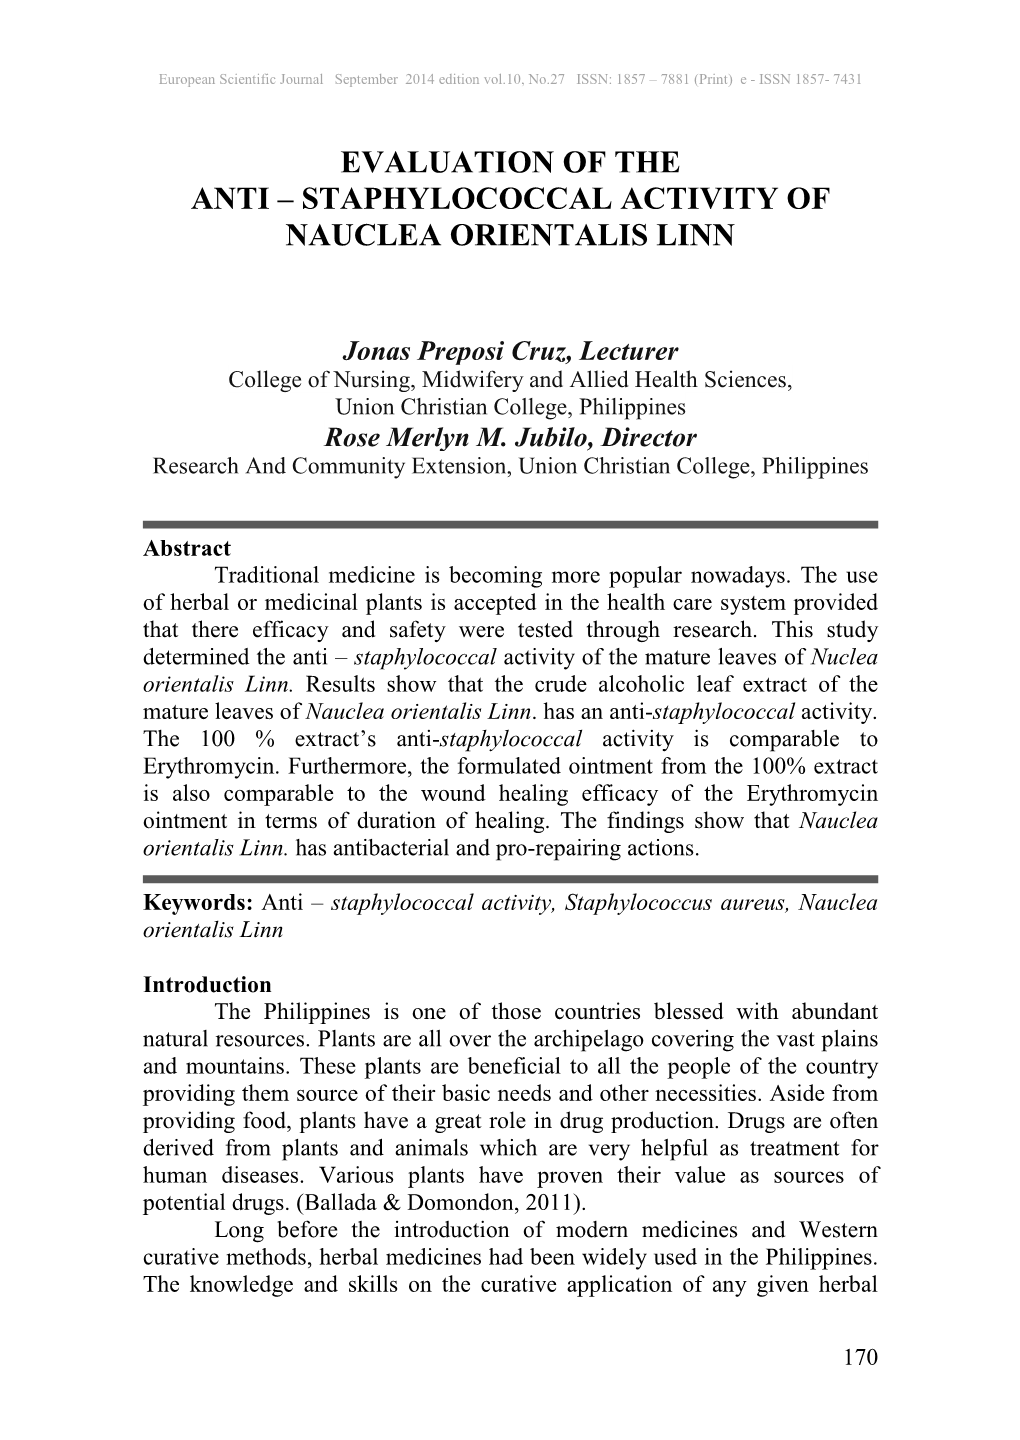 Staphylococcal Activity of Nauclea Orientalis Linn